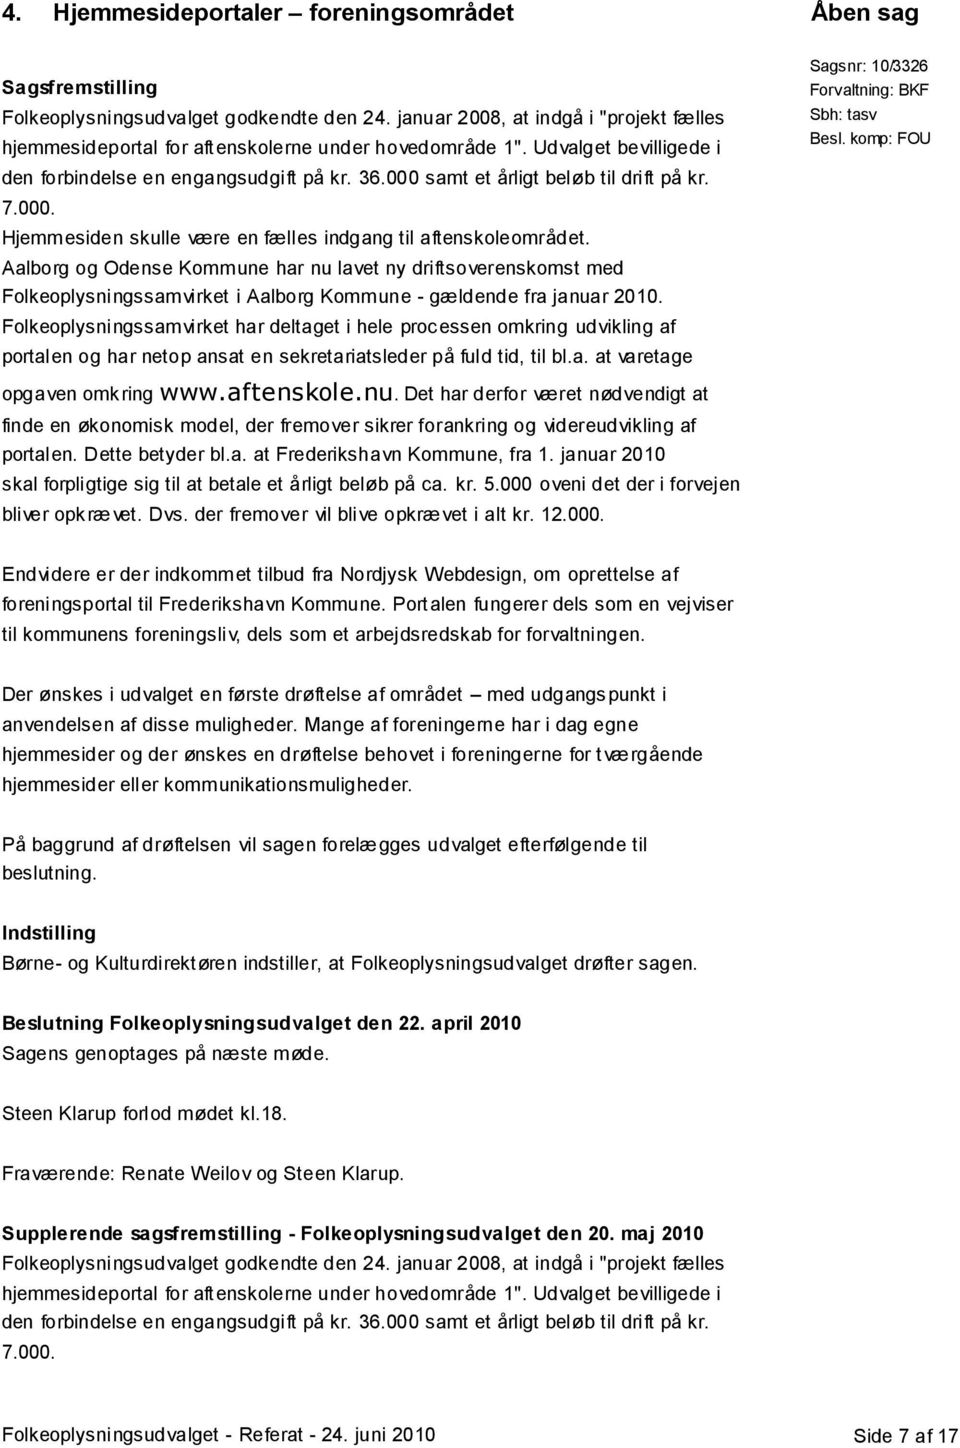 Aalborg og Odense Kommune har nu lavet ny driftsoverenskomst med Folkeoplysningssamvirket i Aalborg Kommune - gældende fra januar 2010.